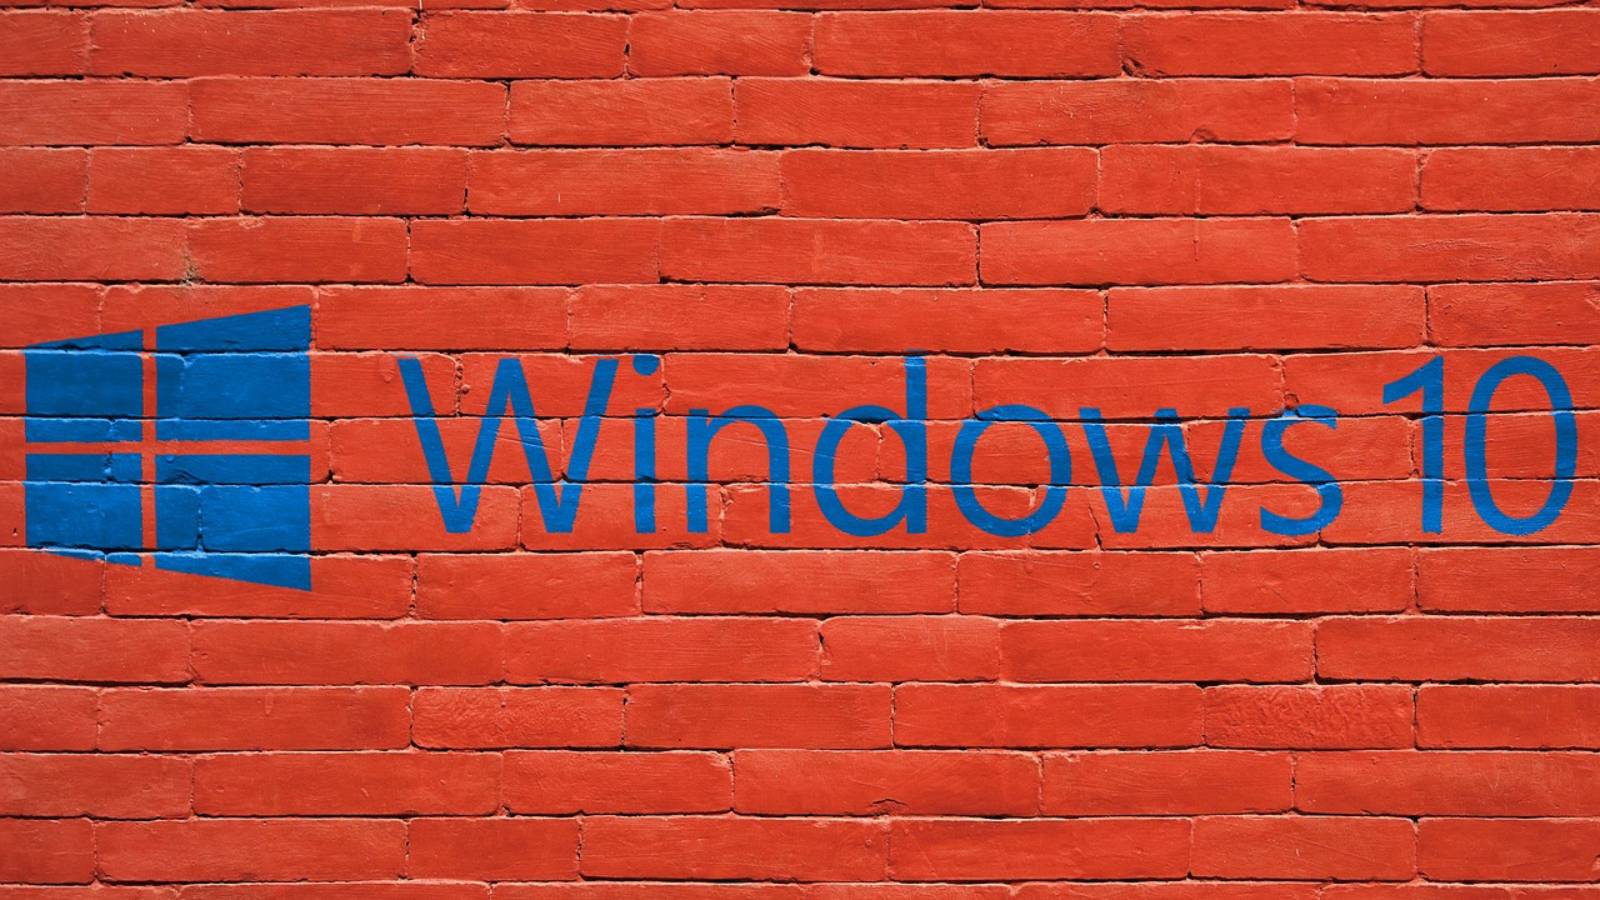 Actualités Windows 10, mise à jour d'octobre 2019